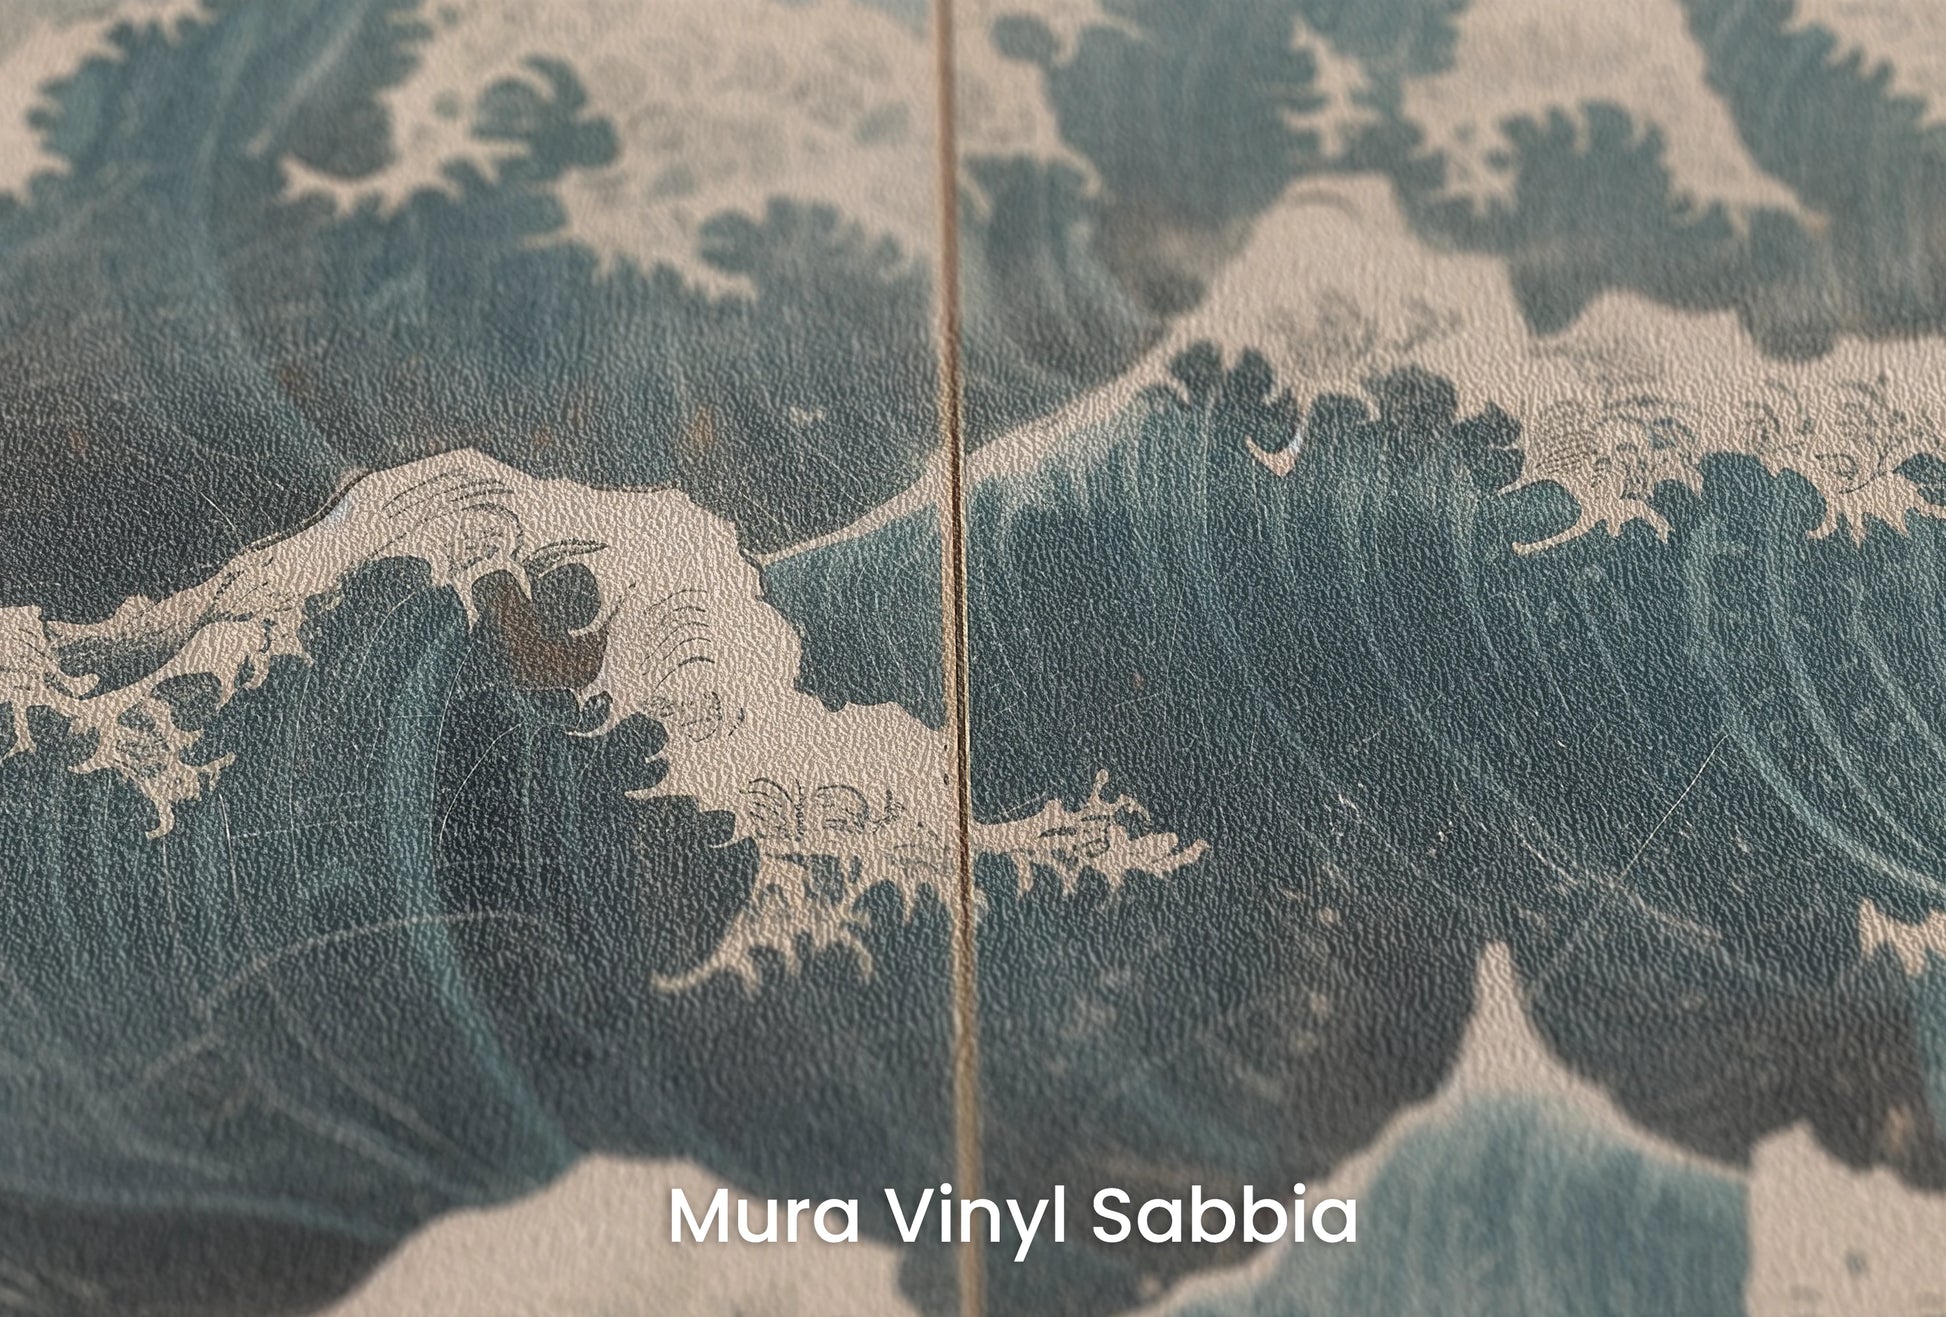 Zbliżenie na artystyczną fototapetę o nazwie Snowy Peak Waves na podłożu Mura Vinyl Sabbia struktura grubego ziarna piasku.